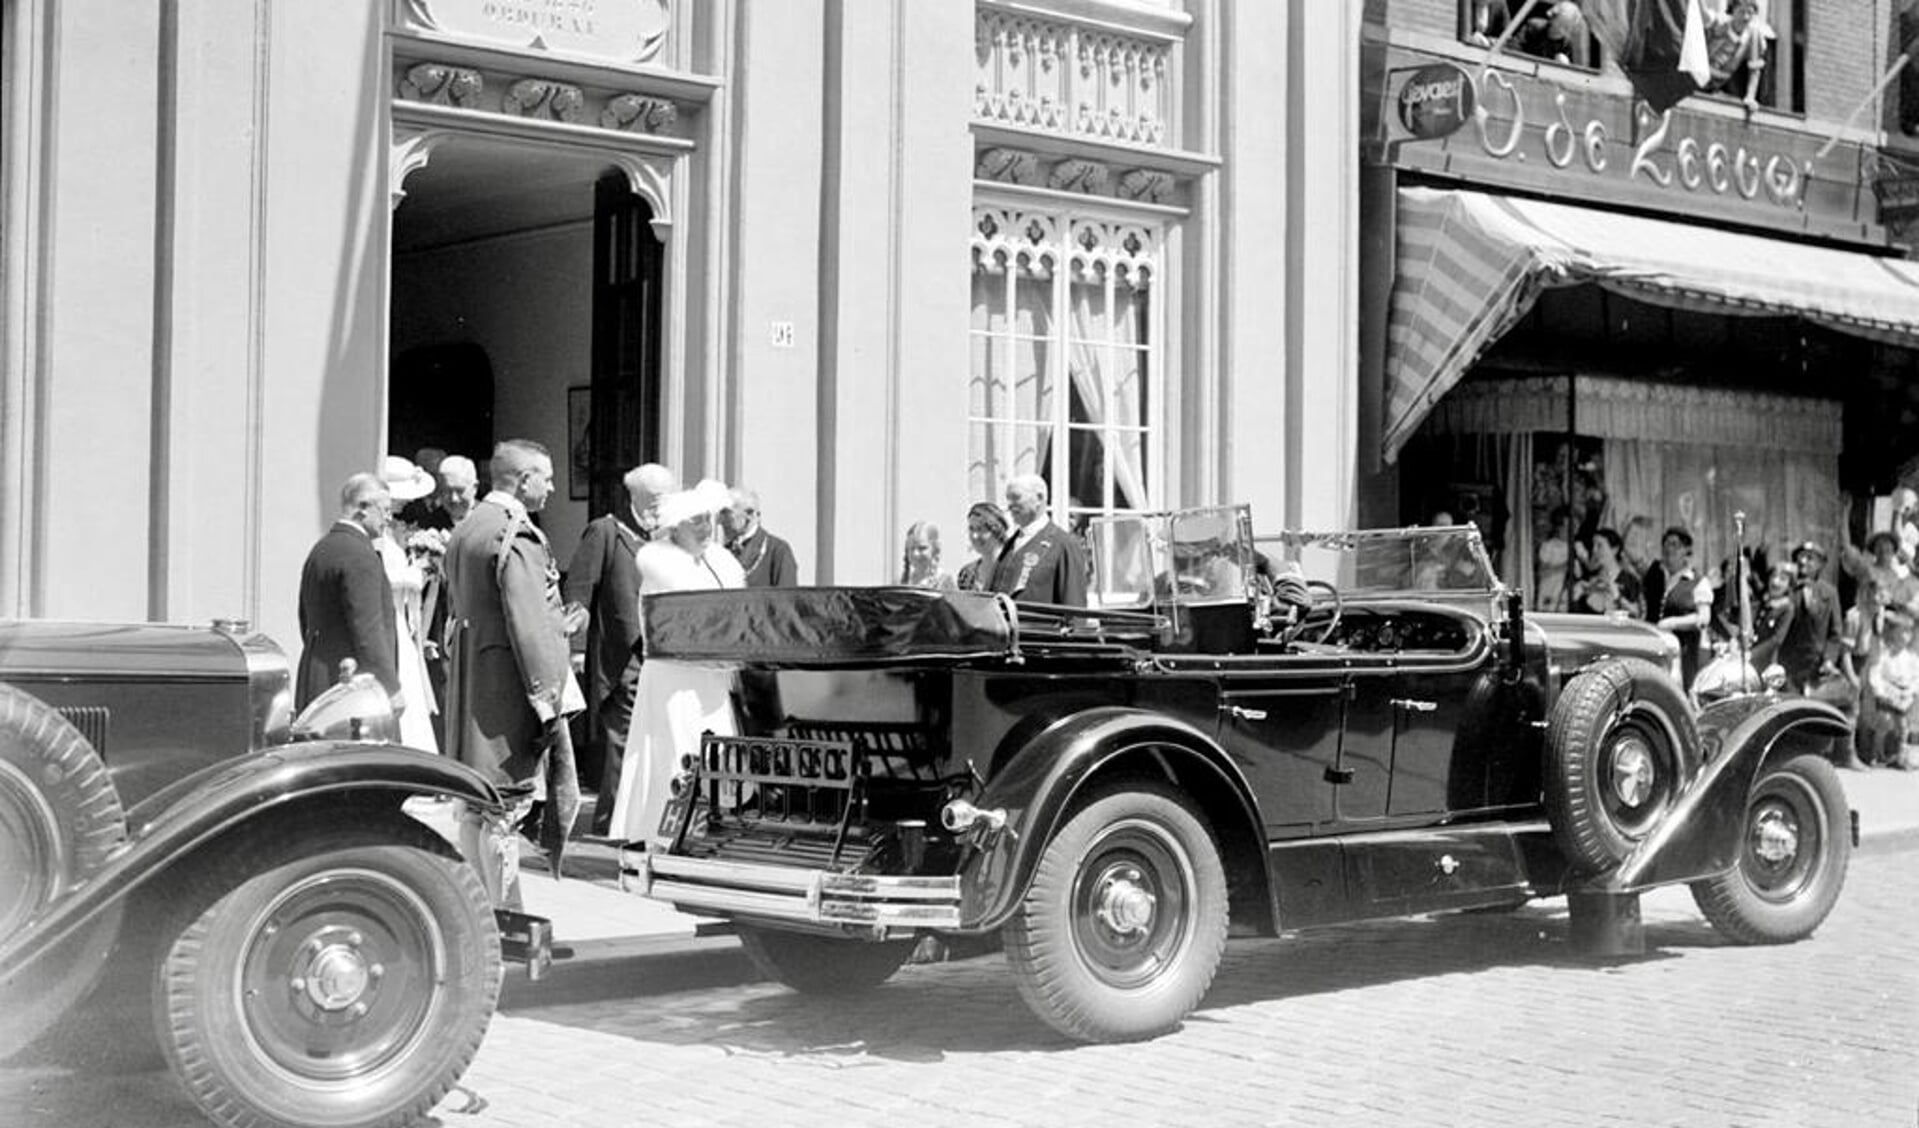 Bezoek van Koningin Wilhelmina en prinses Juliana op 17 juni 1936. De koningin en prinses bij het verlaten van het Zwanenbroedershuis.